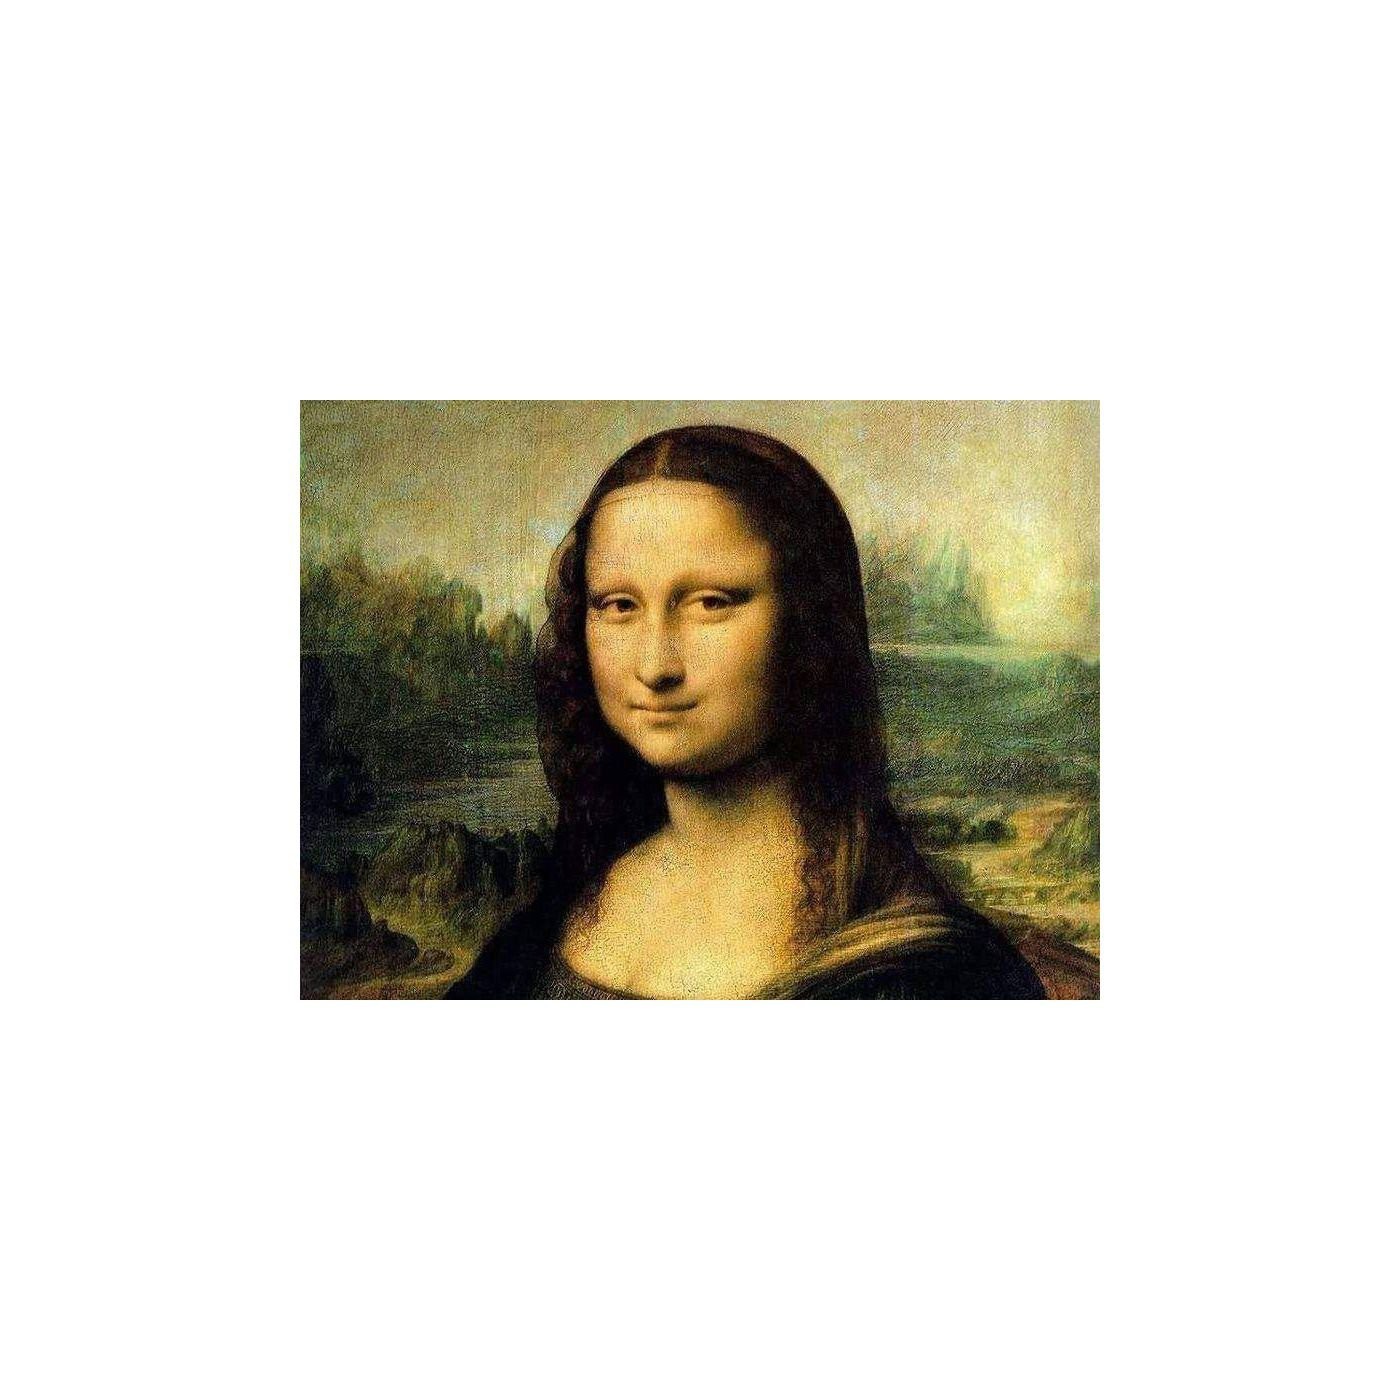 Леонардо да Винчи. Мона Лиза. 1503—1519. Лувр, Париж.